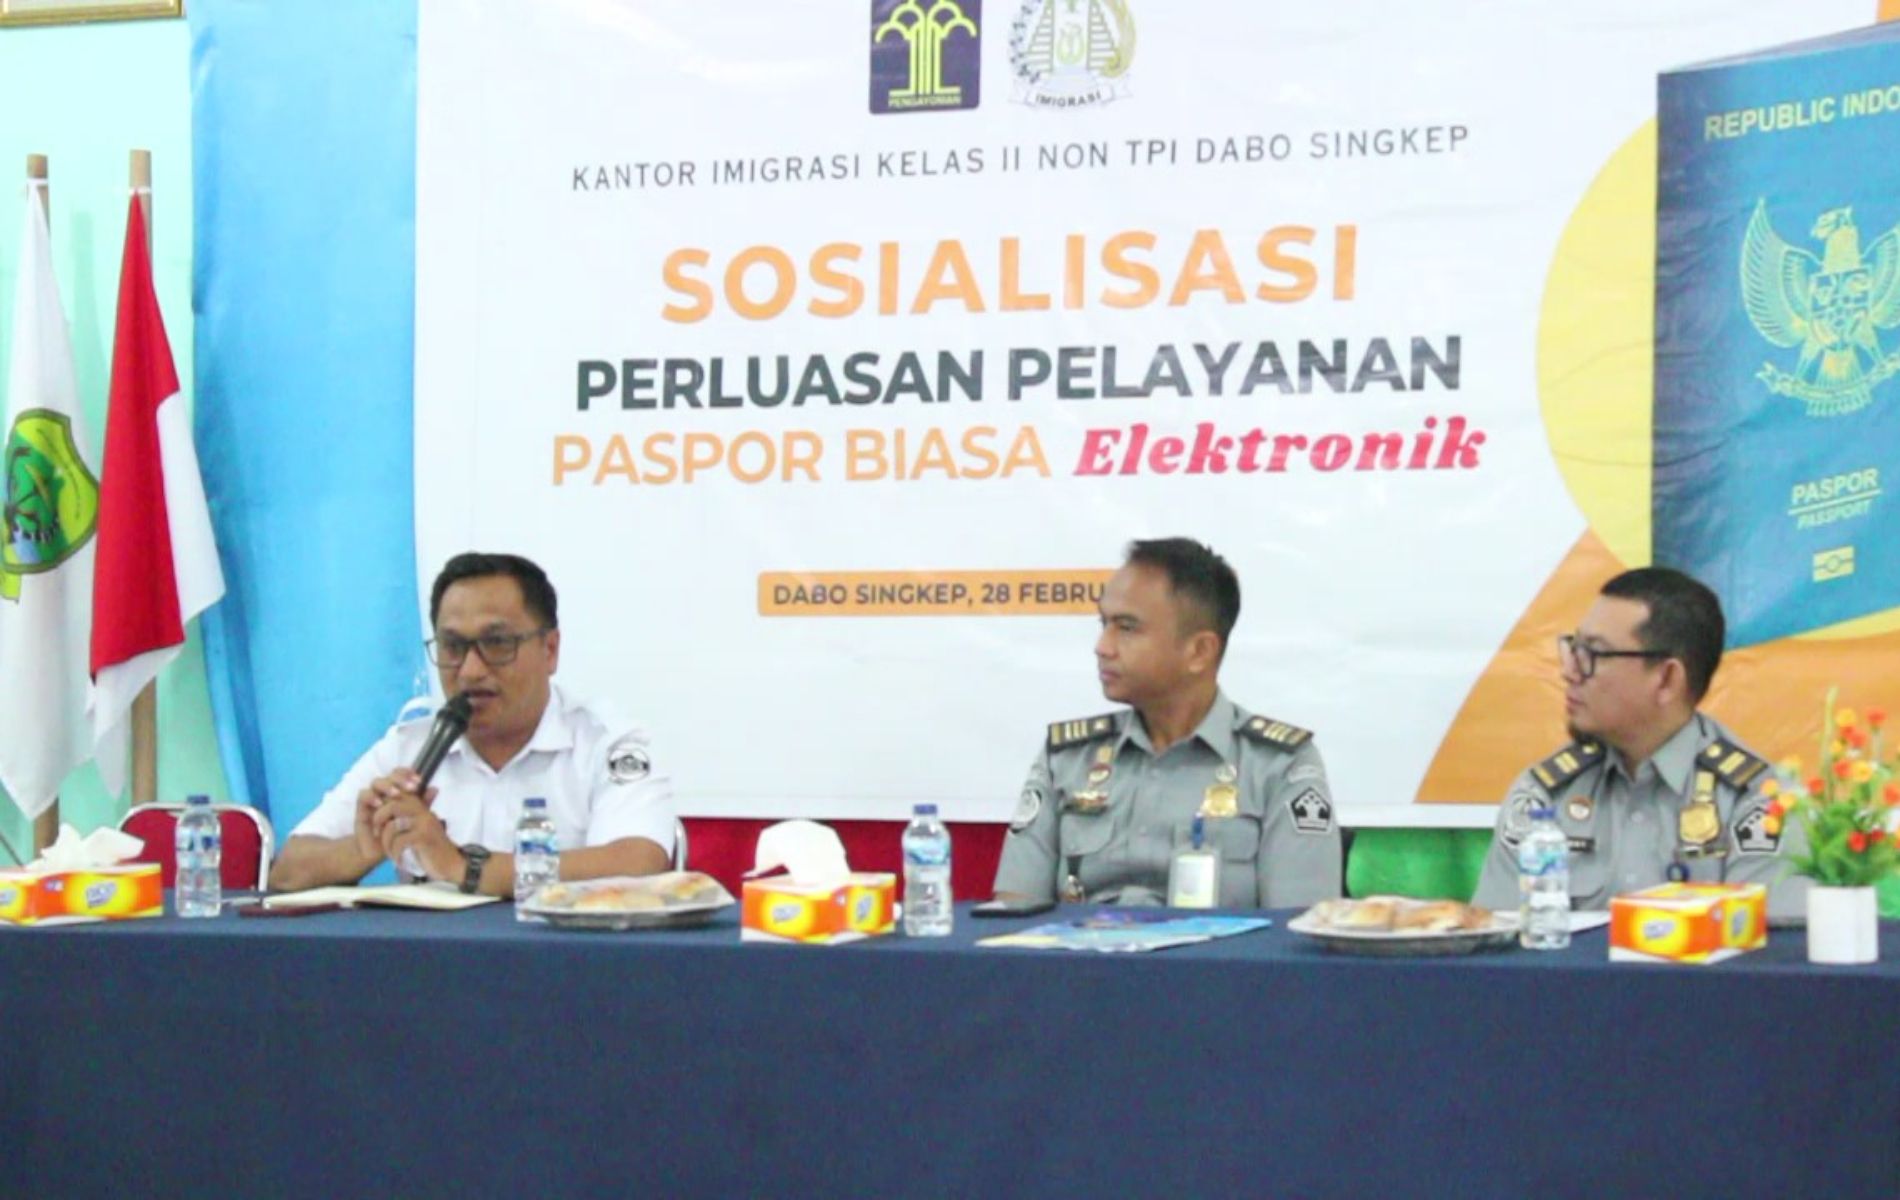 Imigrasi Dabo Singkep sosialiasasi E-Paspor di Desa Tanjung Harapan